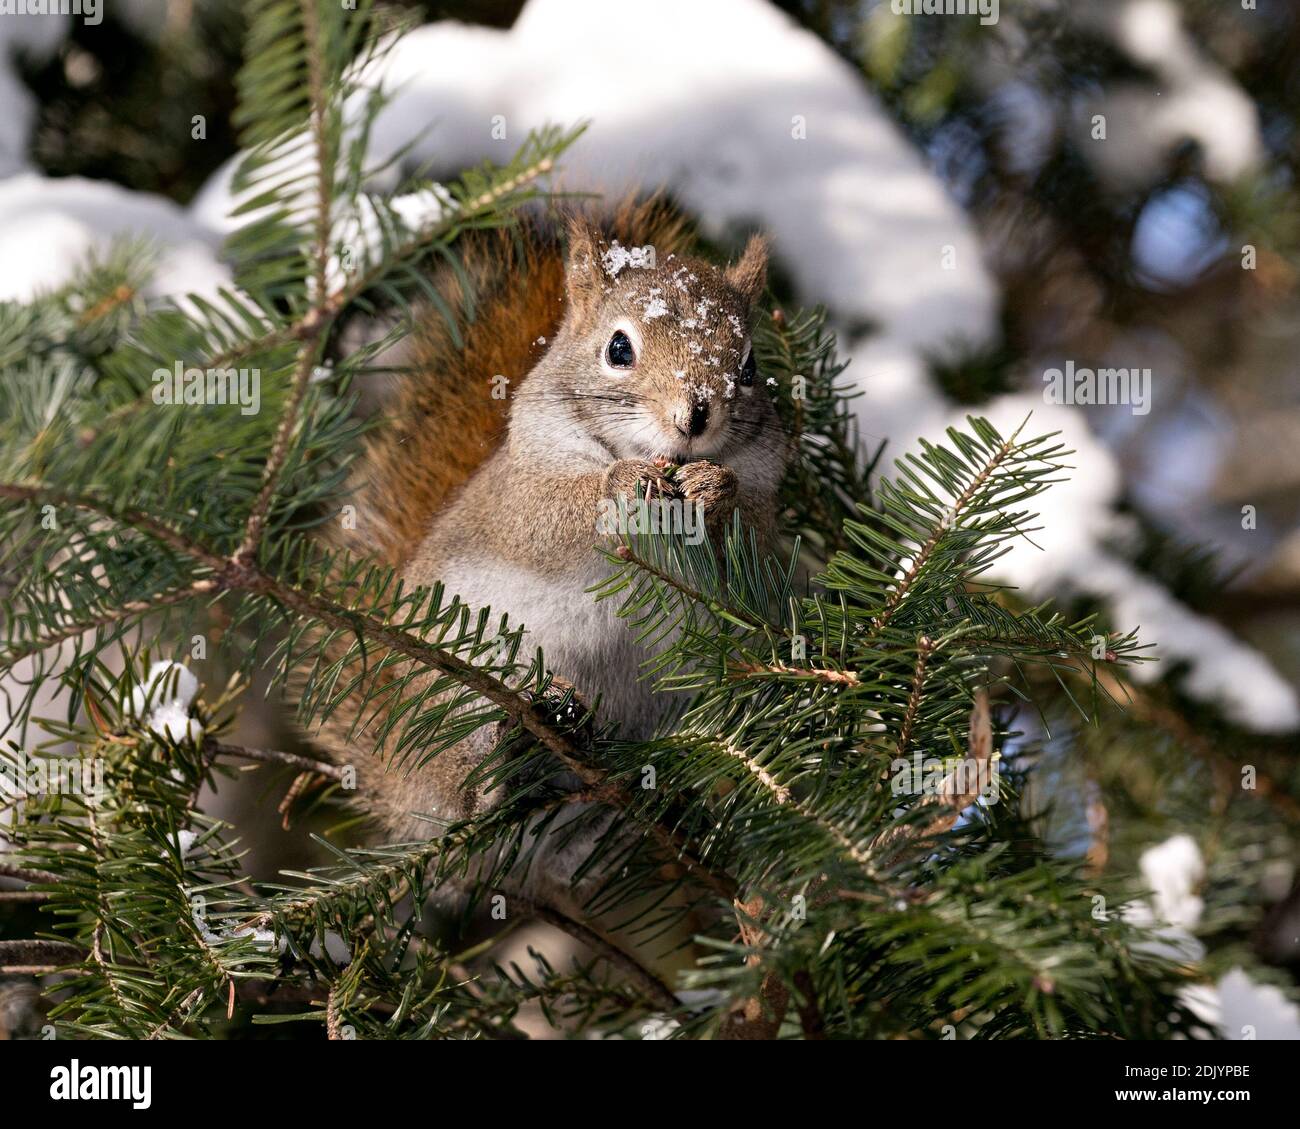 Vista ravvicinata del profilo dello scoiattolo nella foresta seduta su un abete con sfondo sfocato che mostra la sua pelliccia marrone, la neve sulla testa, zampe, coda boscata. Foto Stock